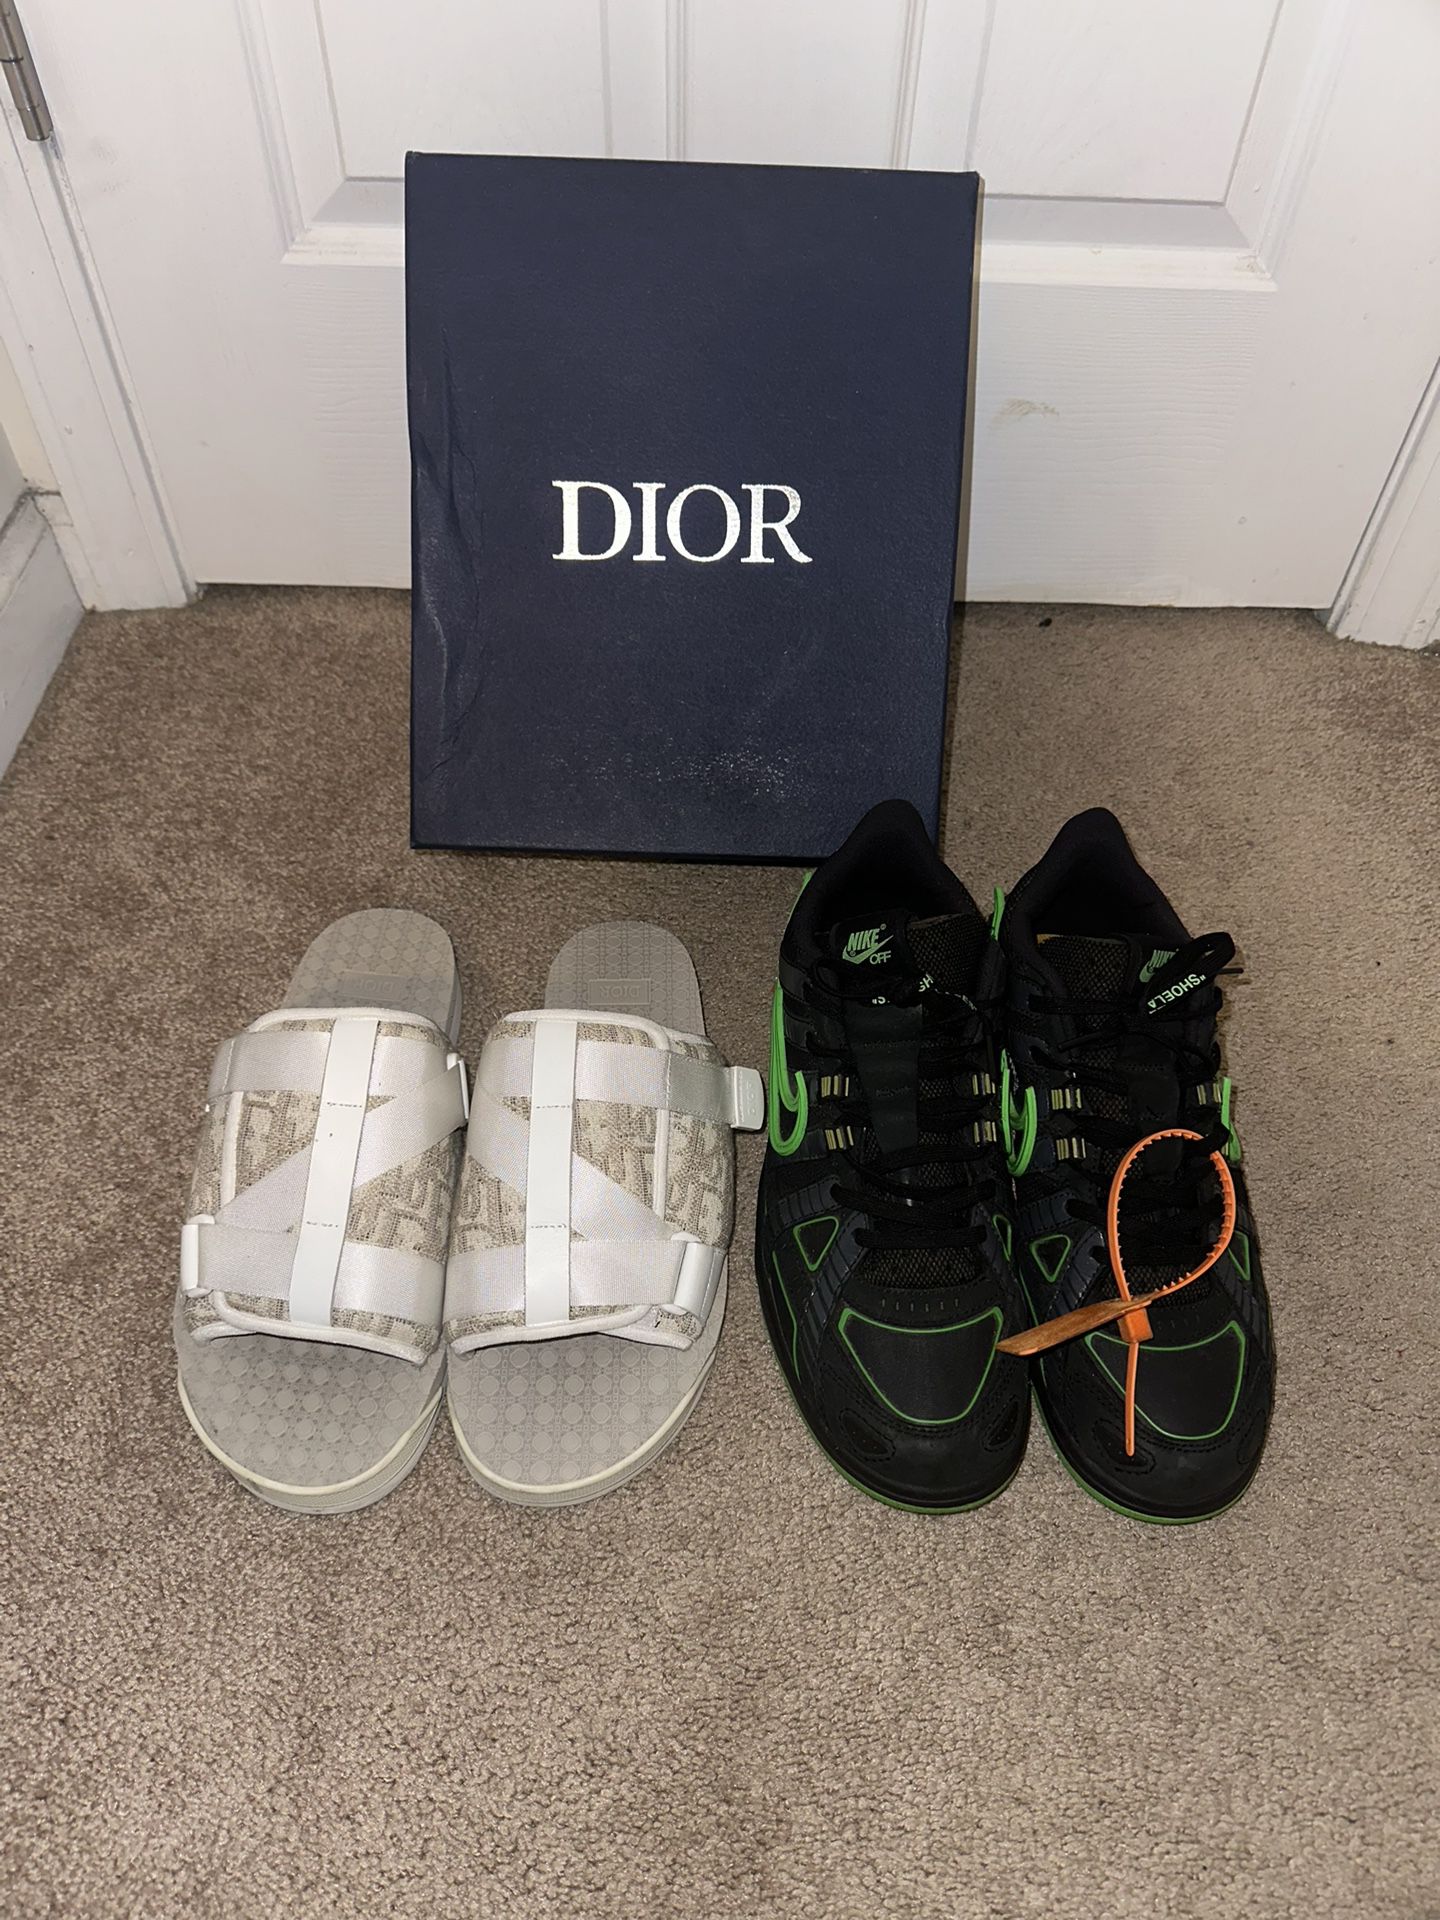 Dior Slides & Off White Dunks Both For $450